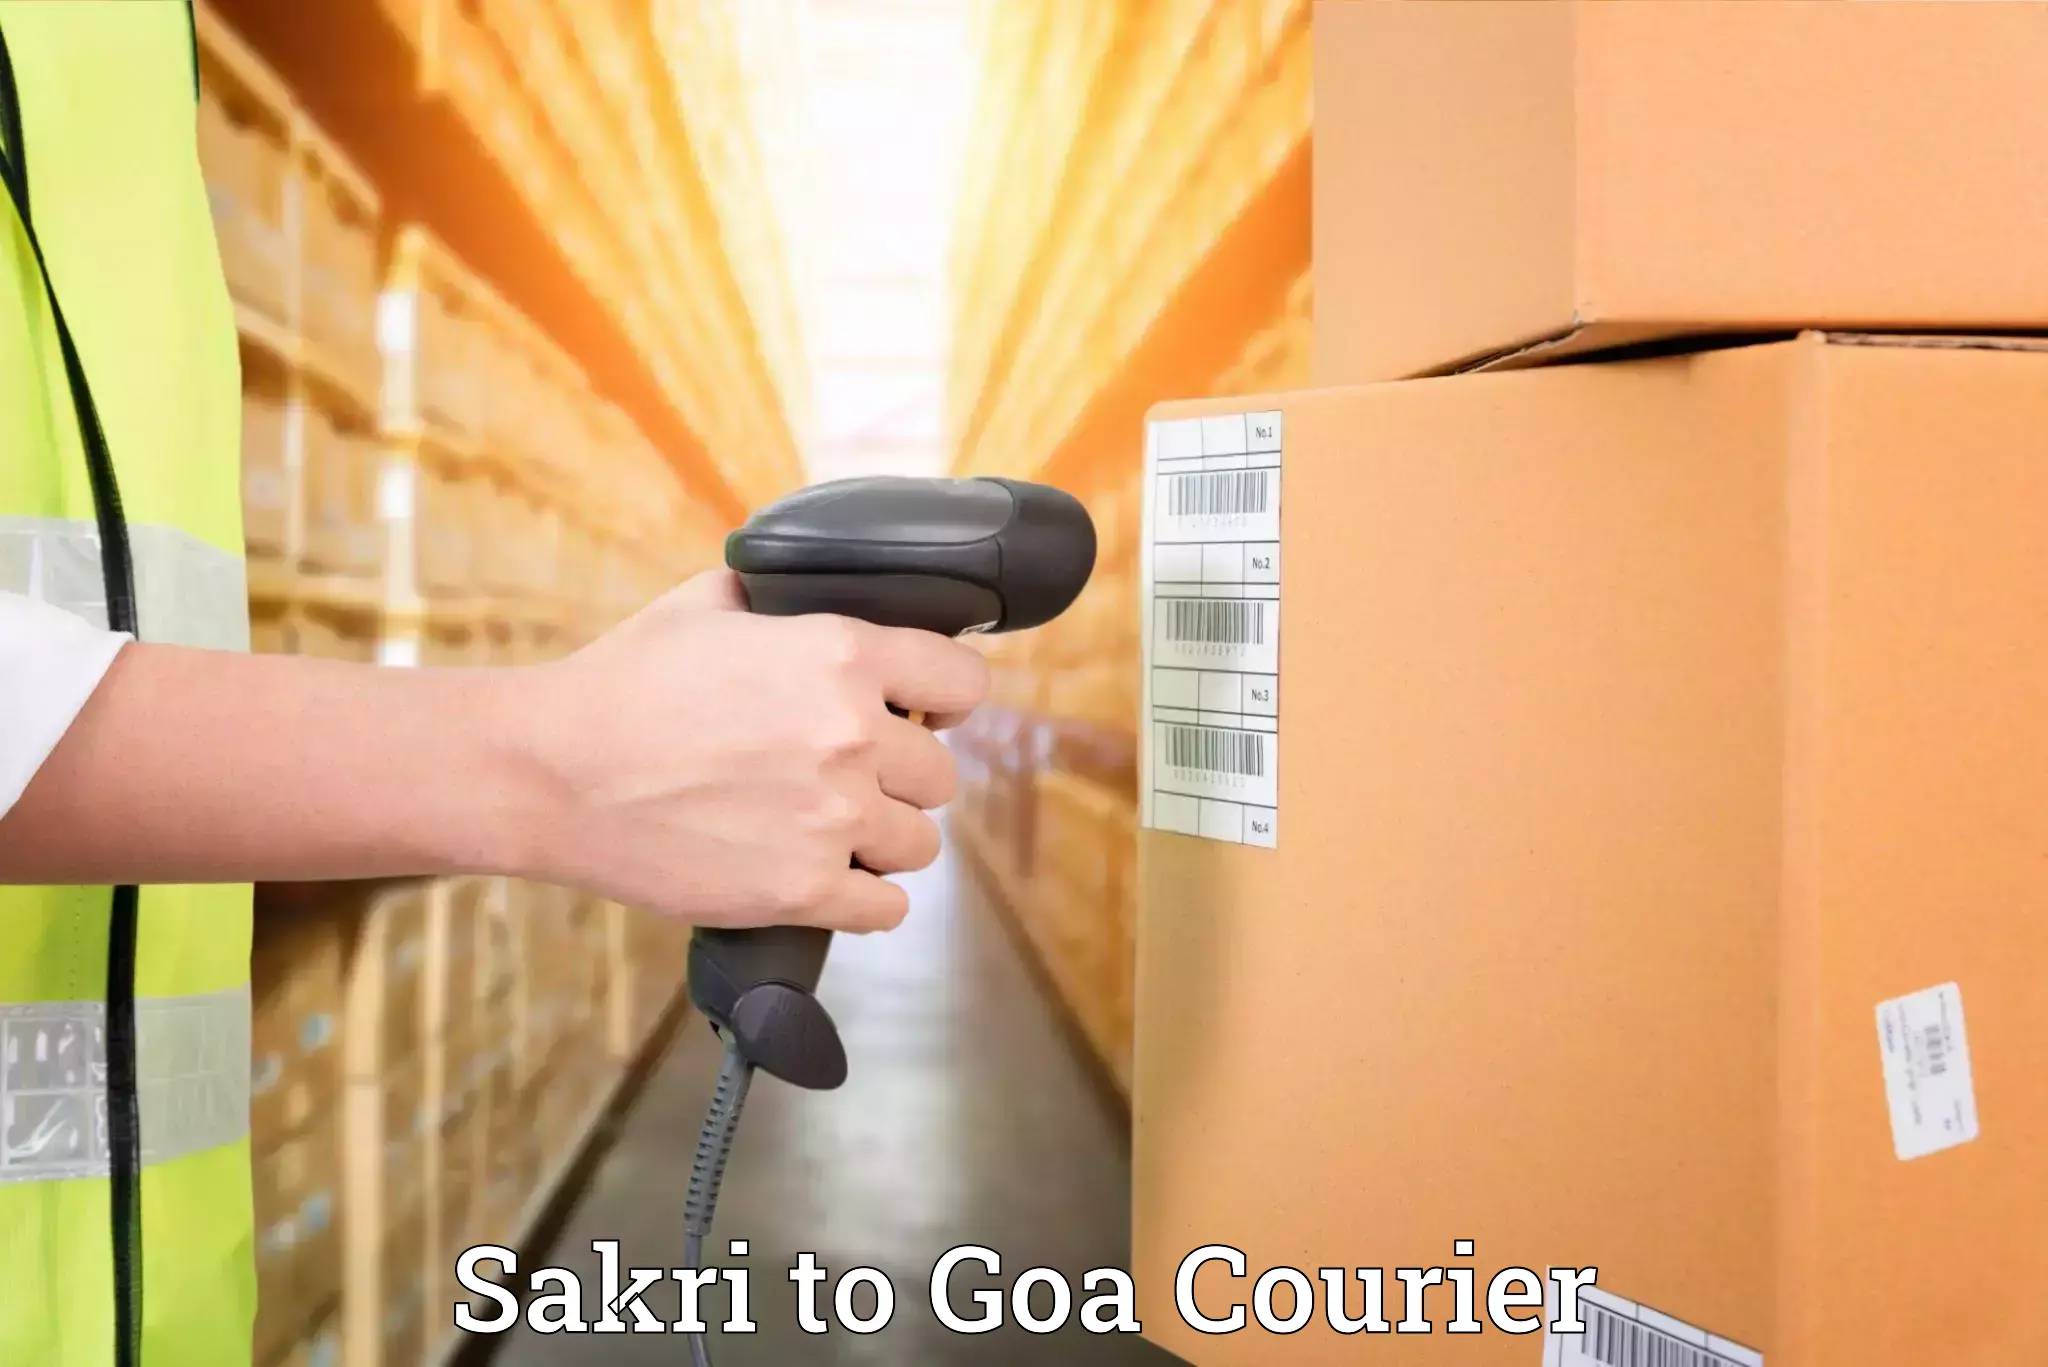 Household transport experts Sakri to South Goa